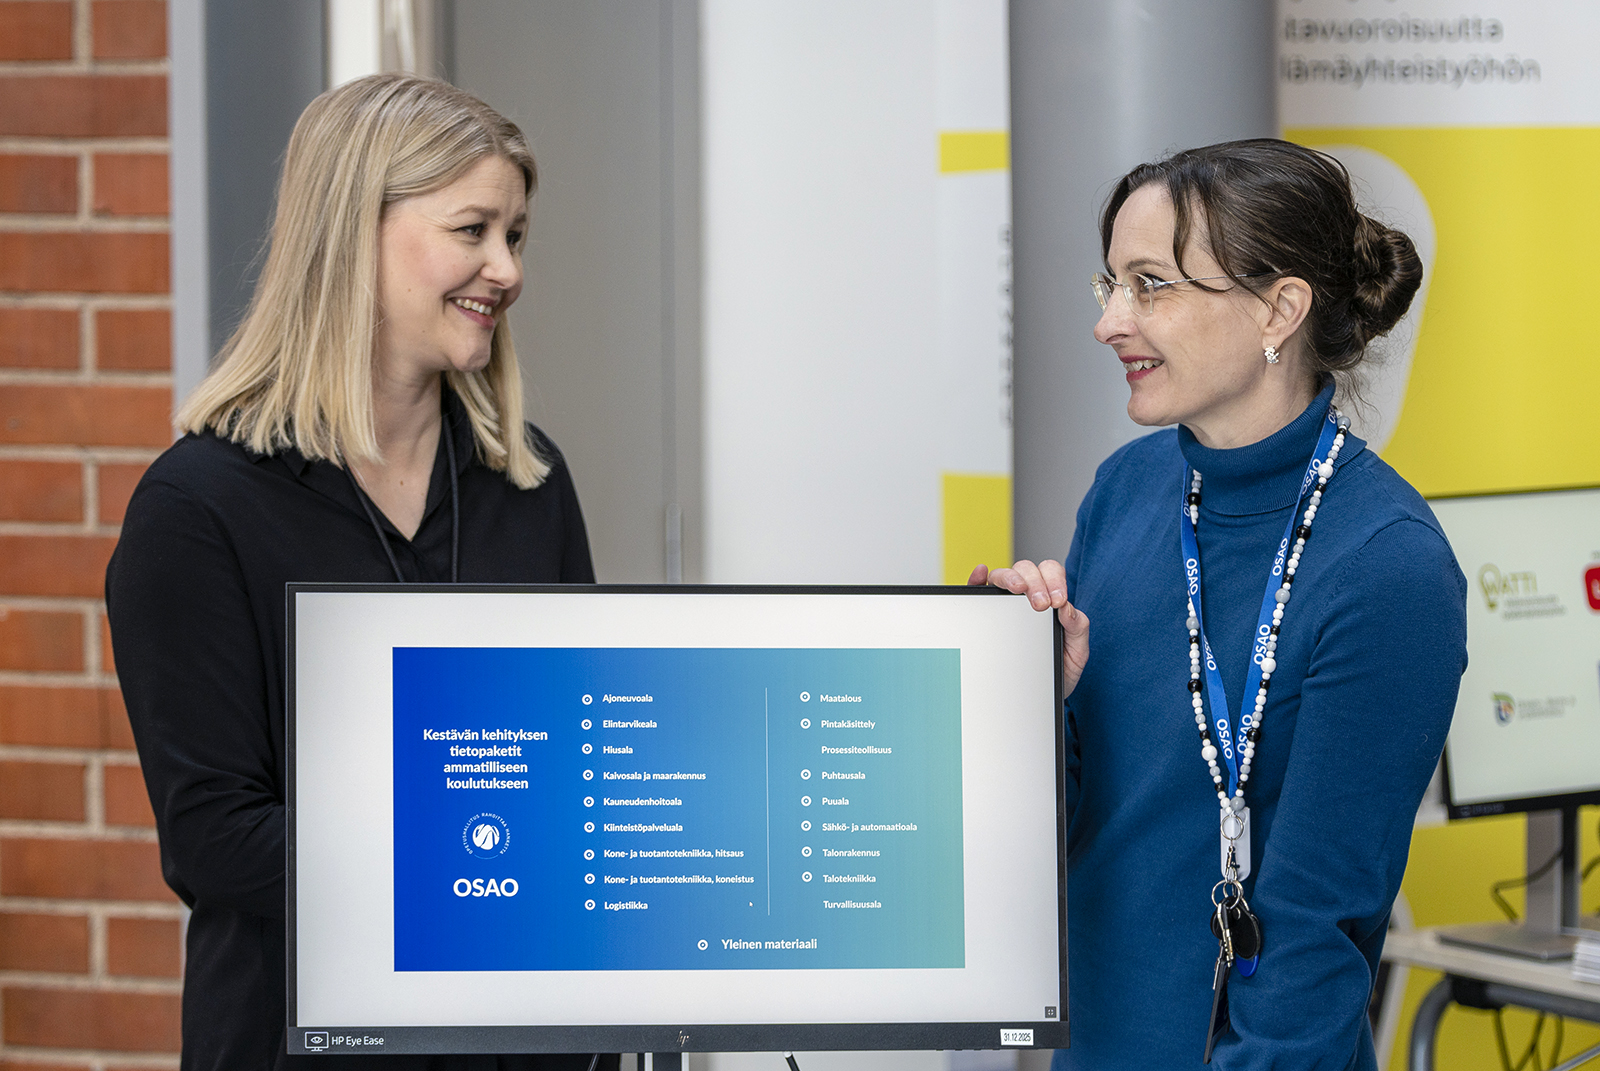 Mirja Hietala kuvassa oikealla ja Elina Halkola kuvassa vasemmalla. He seisovat tietokoneruudun edessä, jolla näkyy esitys otsikolla Kestävän kehityksen tietopaketit ammatilliseen koulutukseen. 